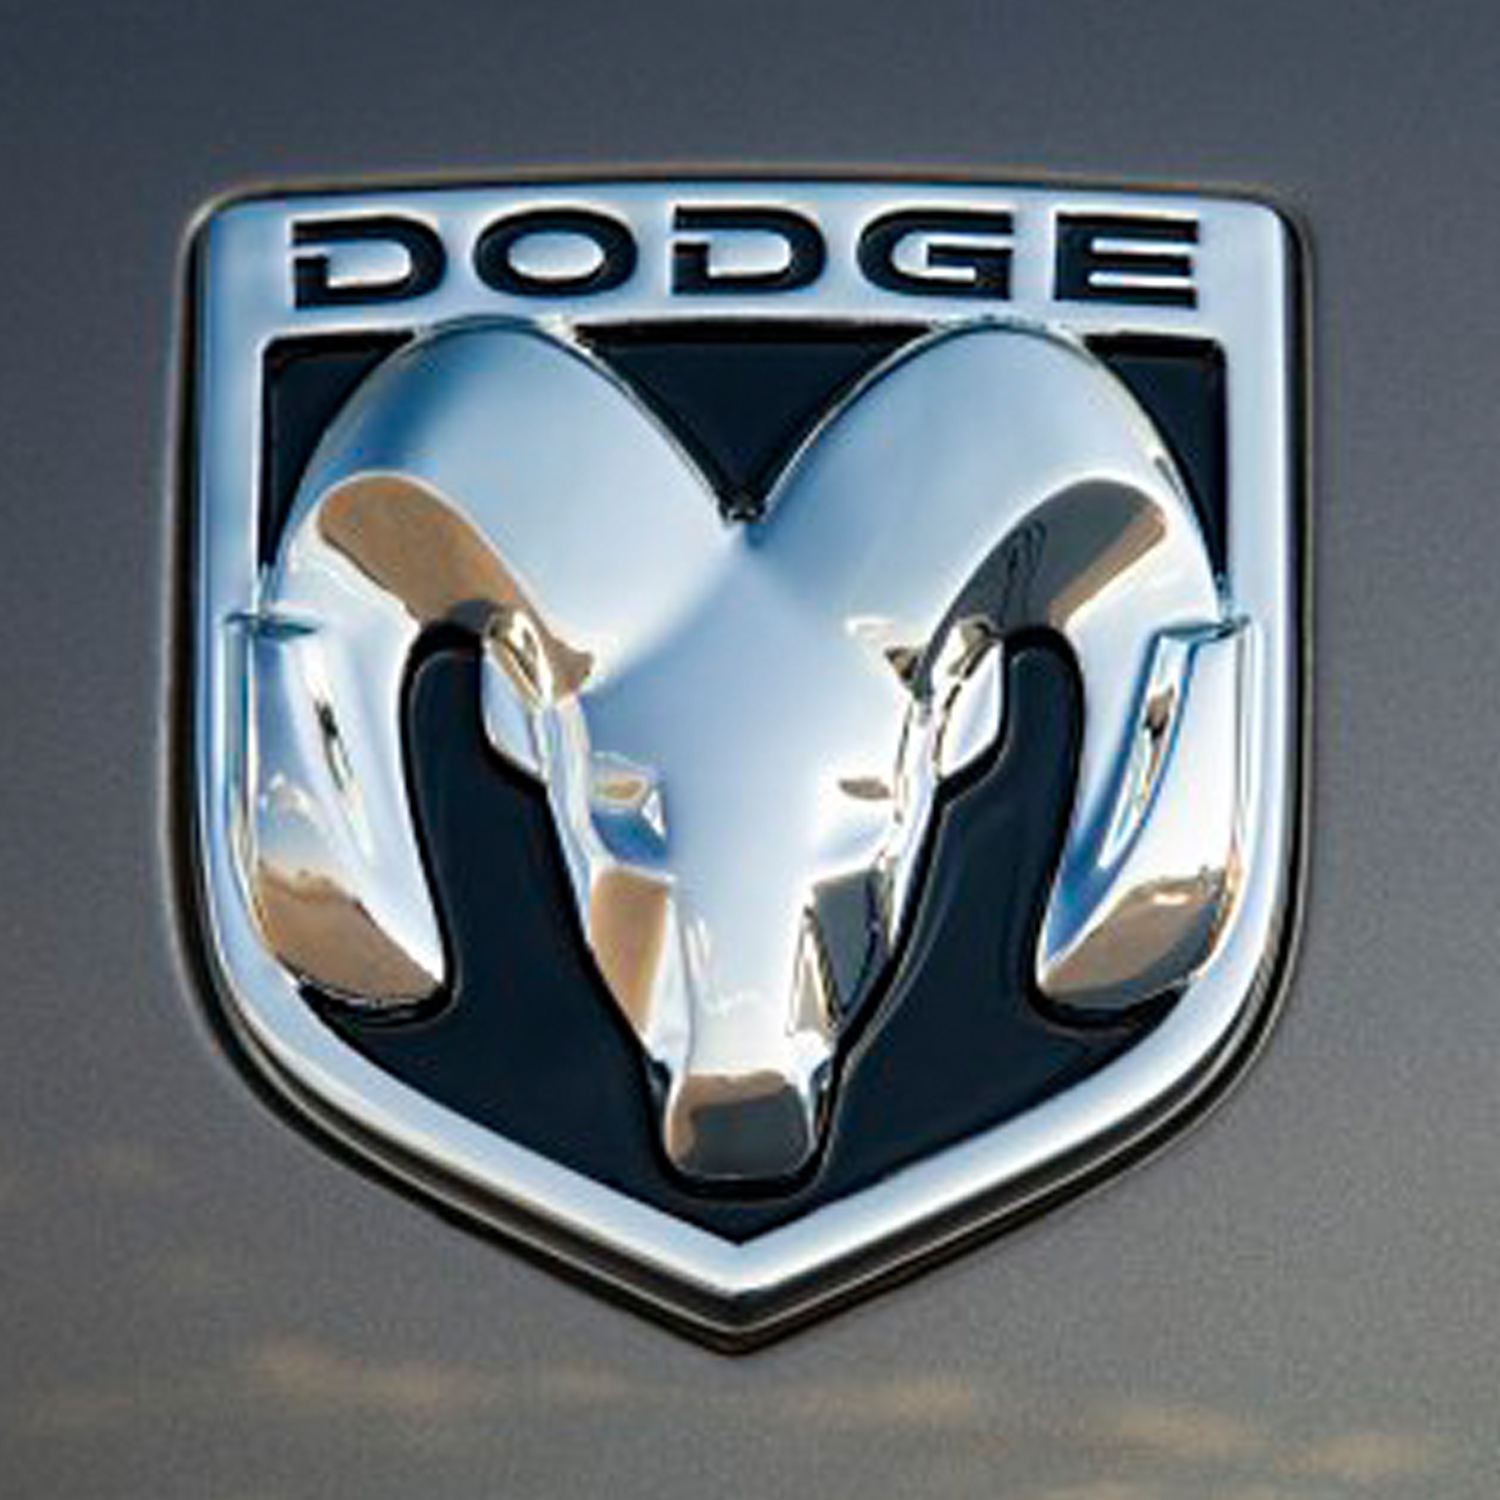 Dodge logo car emblem